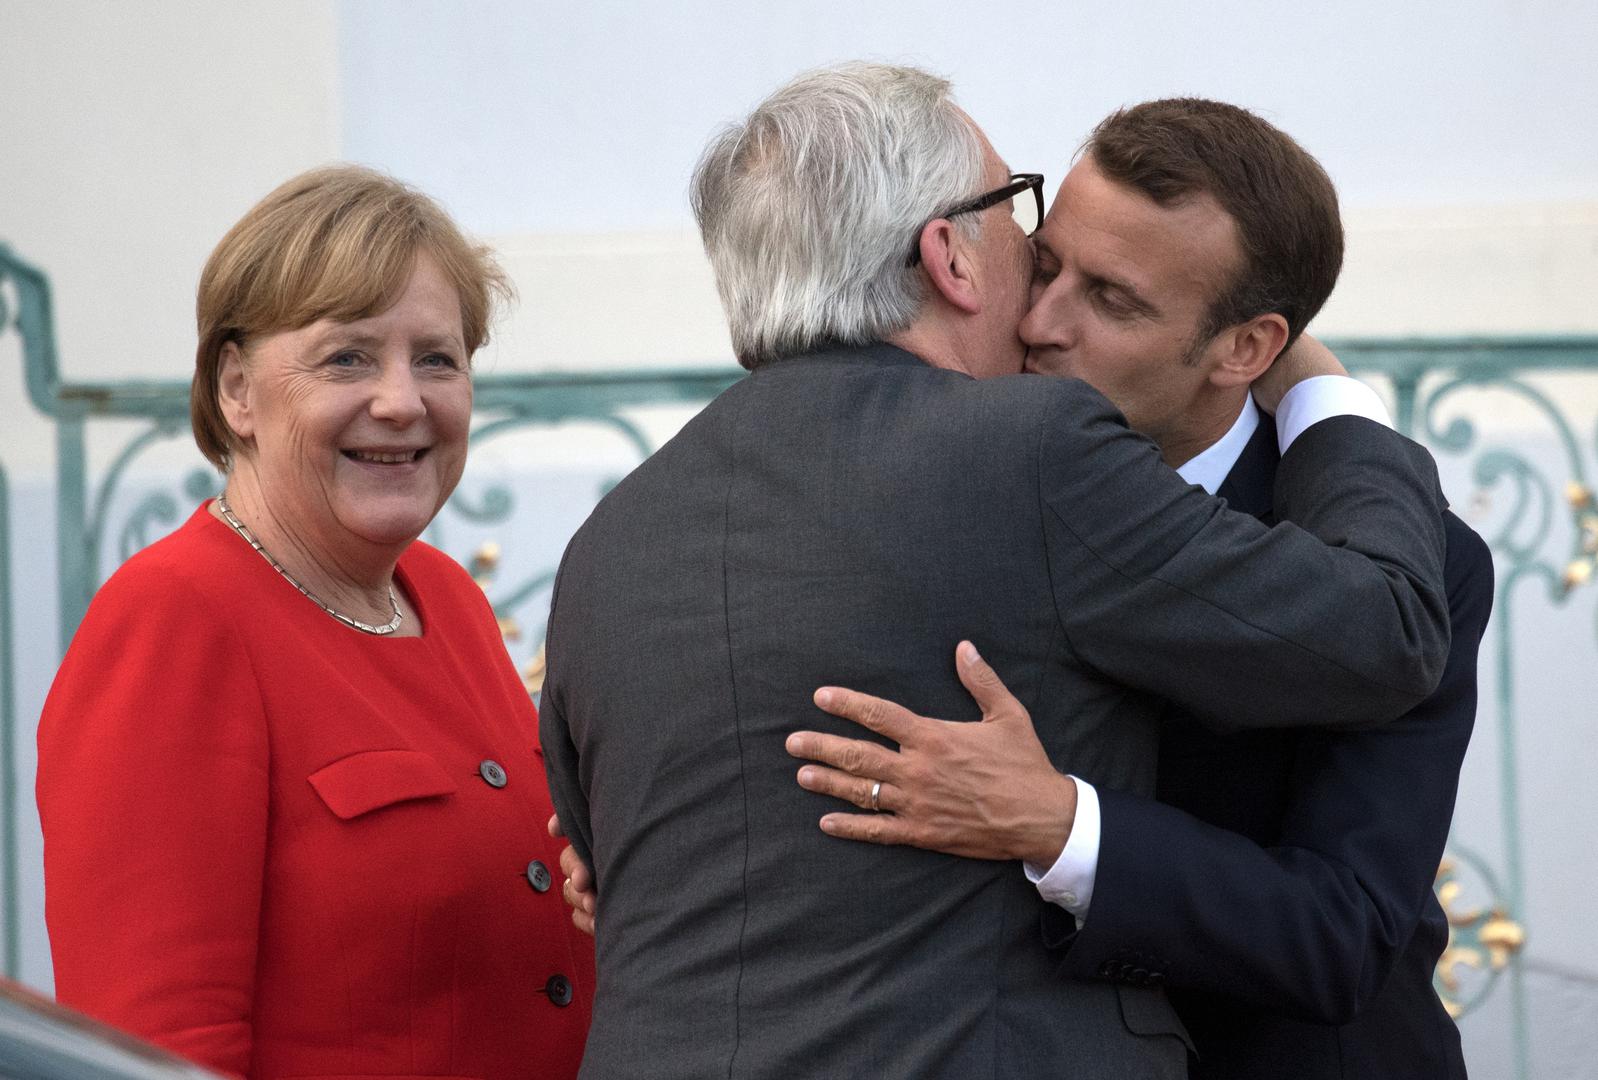 Kada francuski predsjednik Macron govorio o potrebi stvaranja europske vojske, nesuđeni zapovjednik te sile, Juncker, opet je teturao na tiskovnoj konferenciji, a svijet je obišla vijest da je, uz to, i obukao cipele različite boje